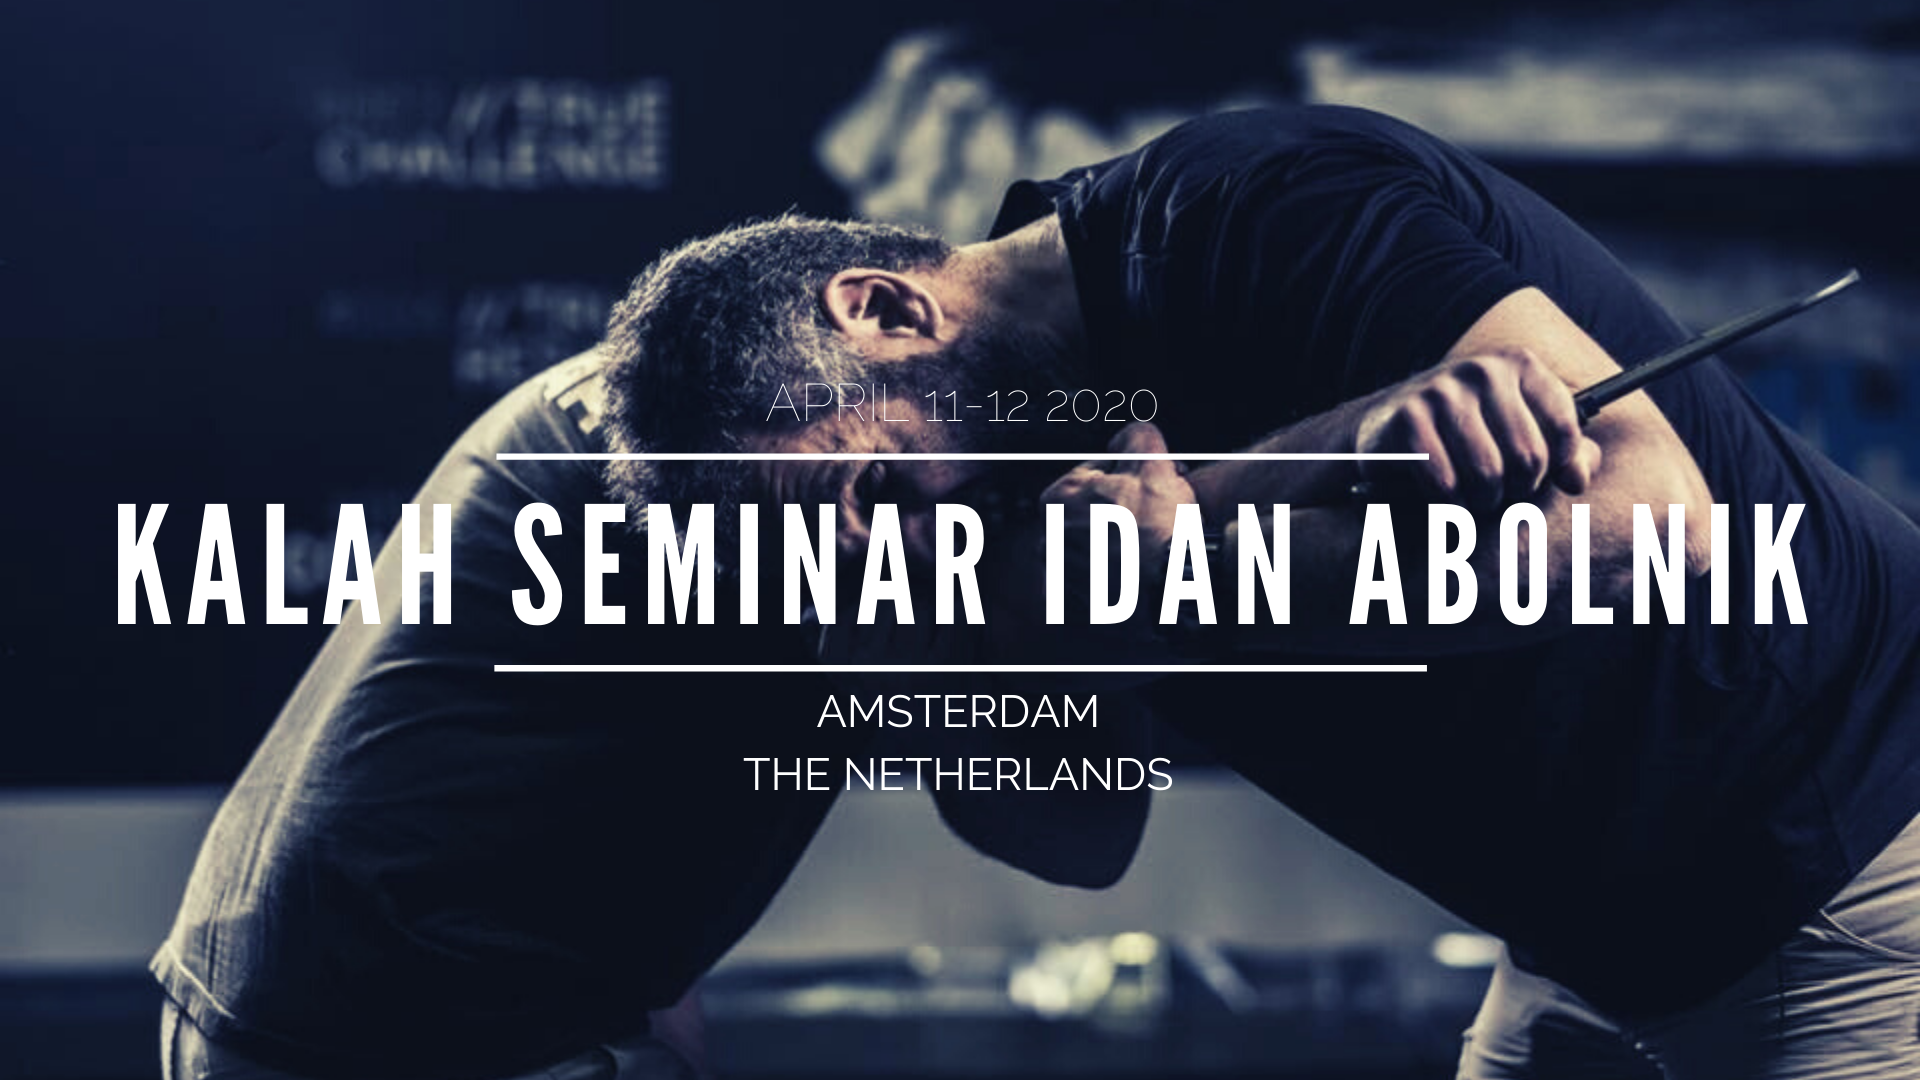 Kalah Seminar Idan Abolnik 11-12.04.2020 Amsterdam